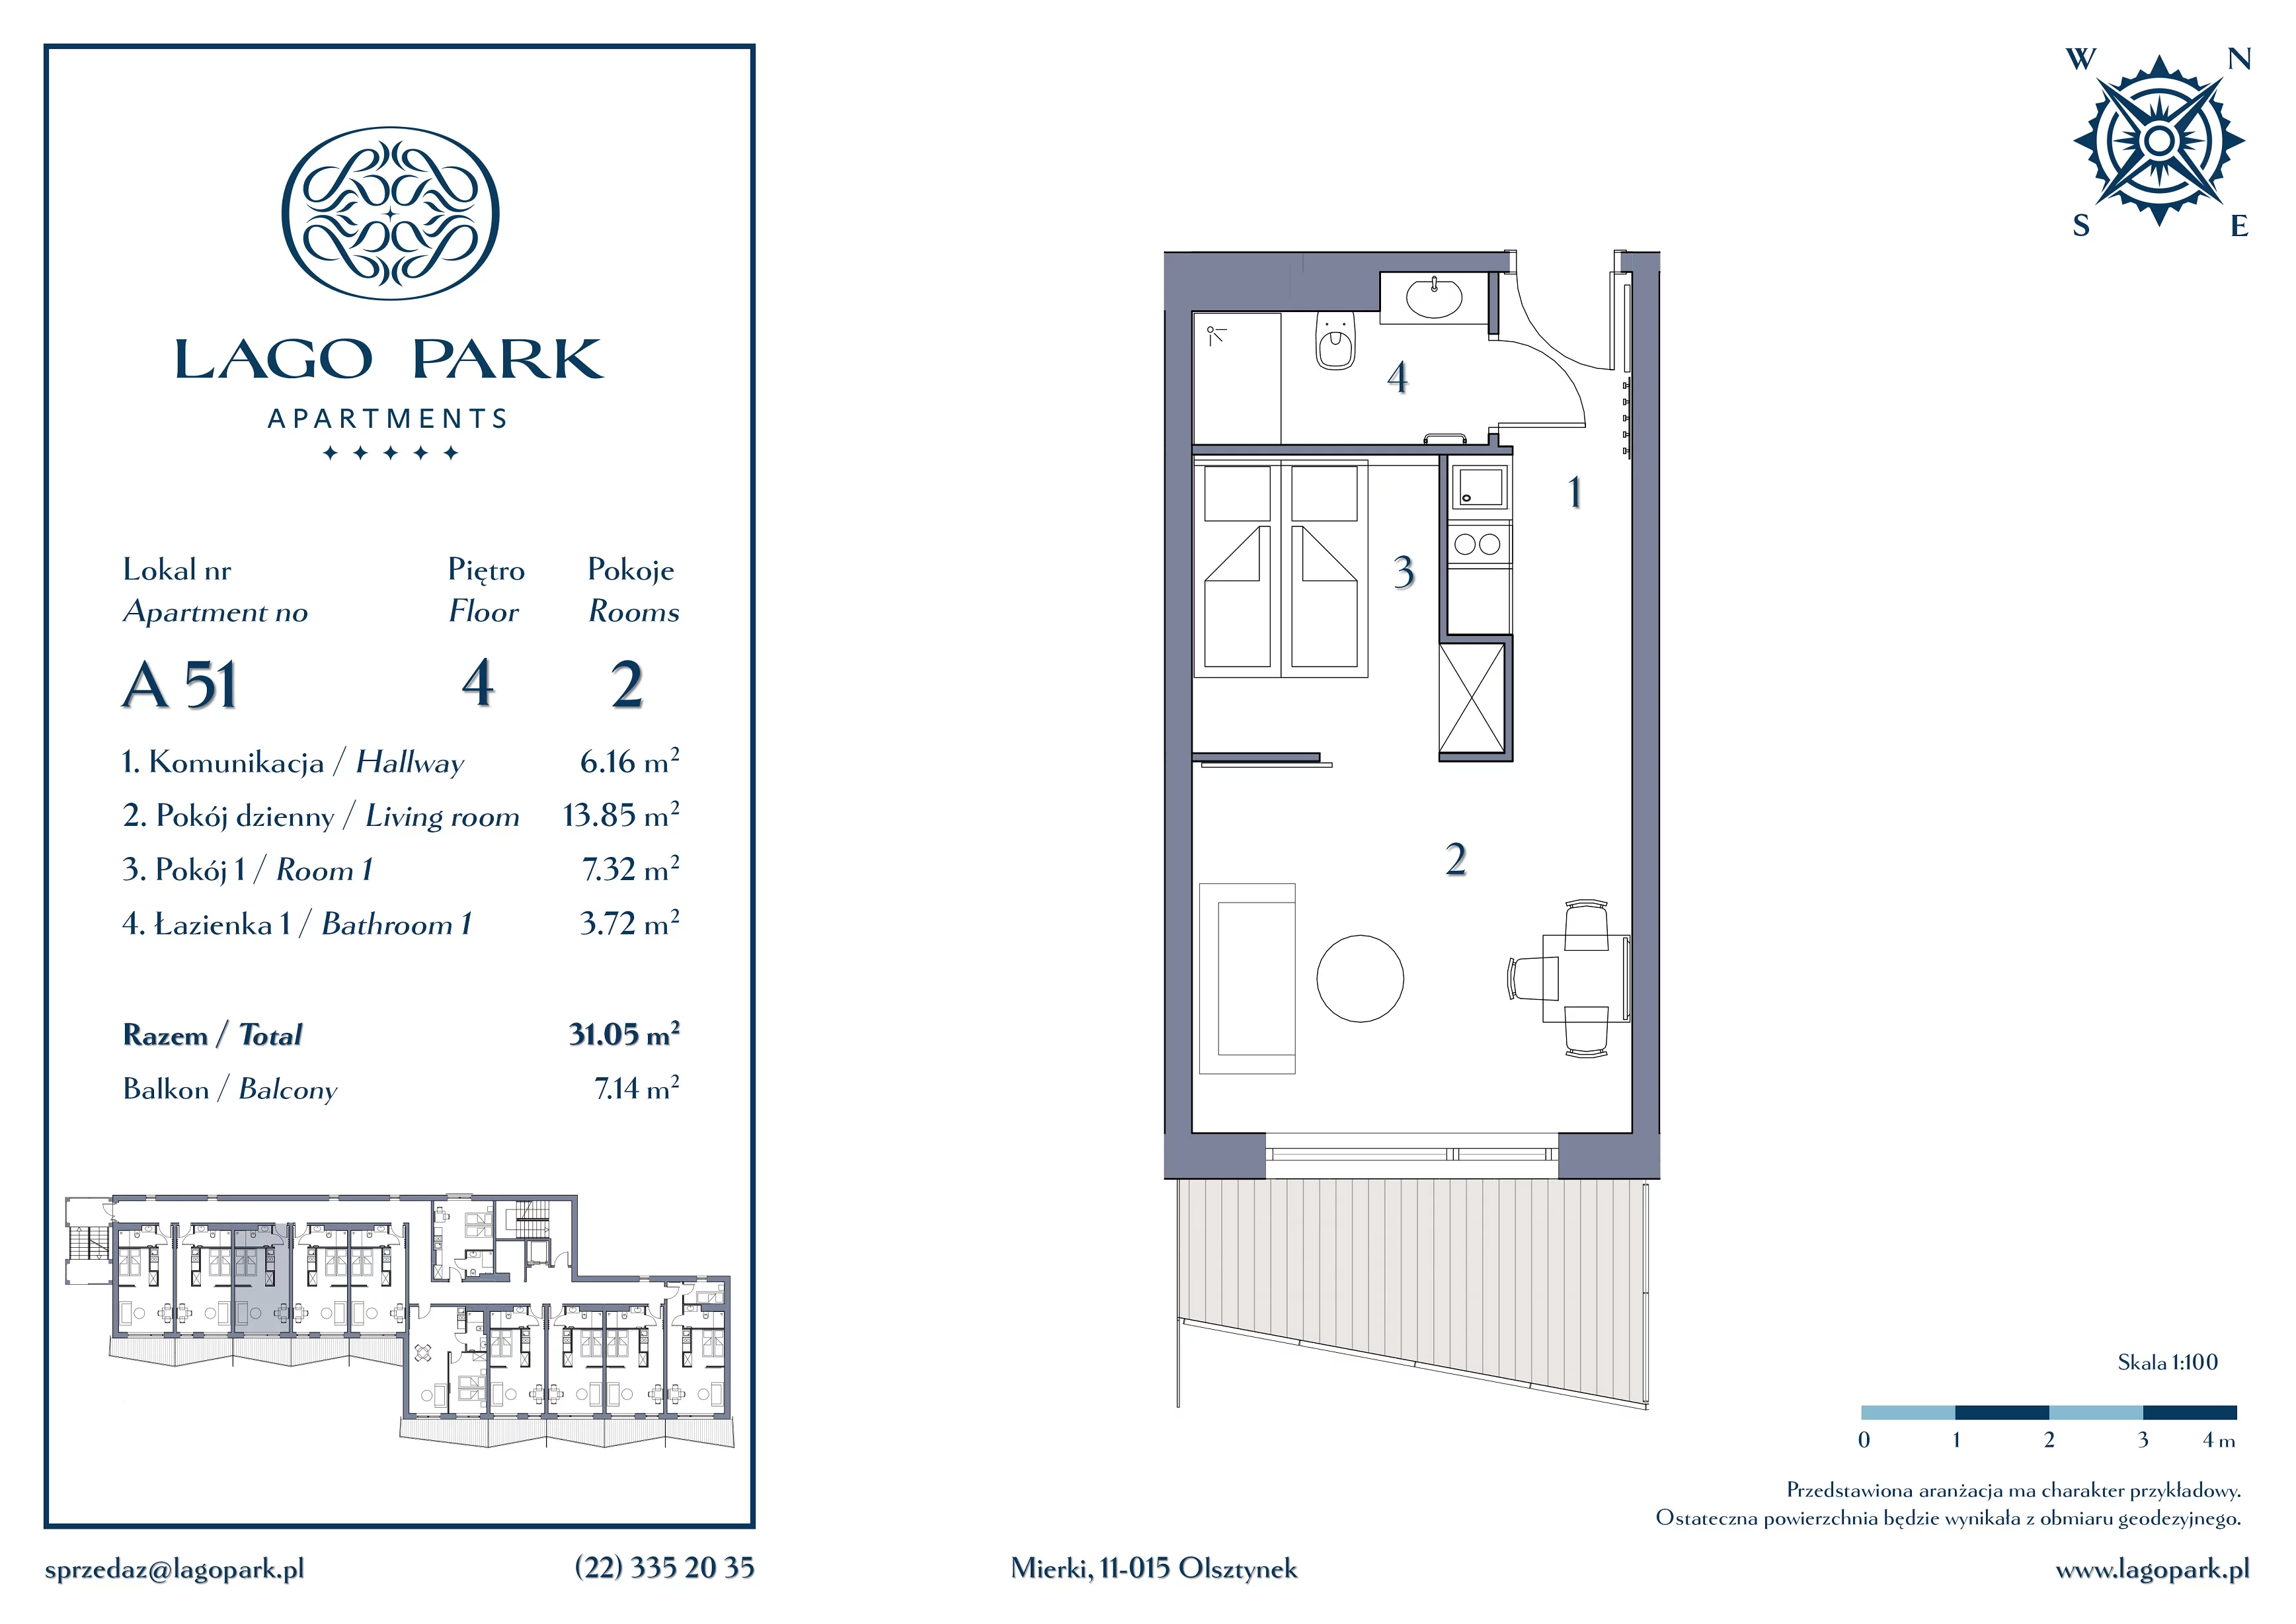 Apartament inwestycyjny 31,05 m², piętro 4, oferta nr A51, Lago Park Apartments by Aries, Mierki, Kołatek 2